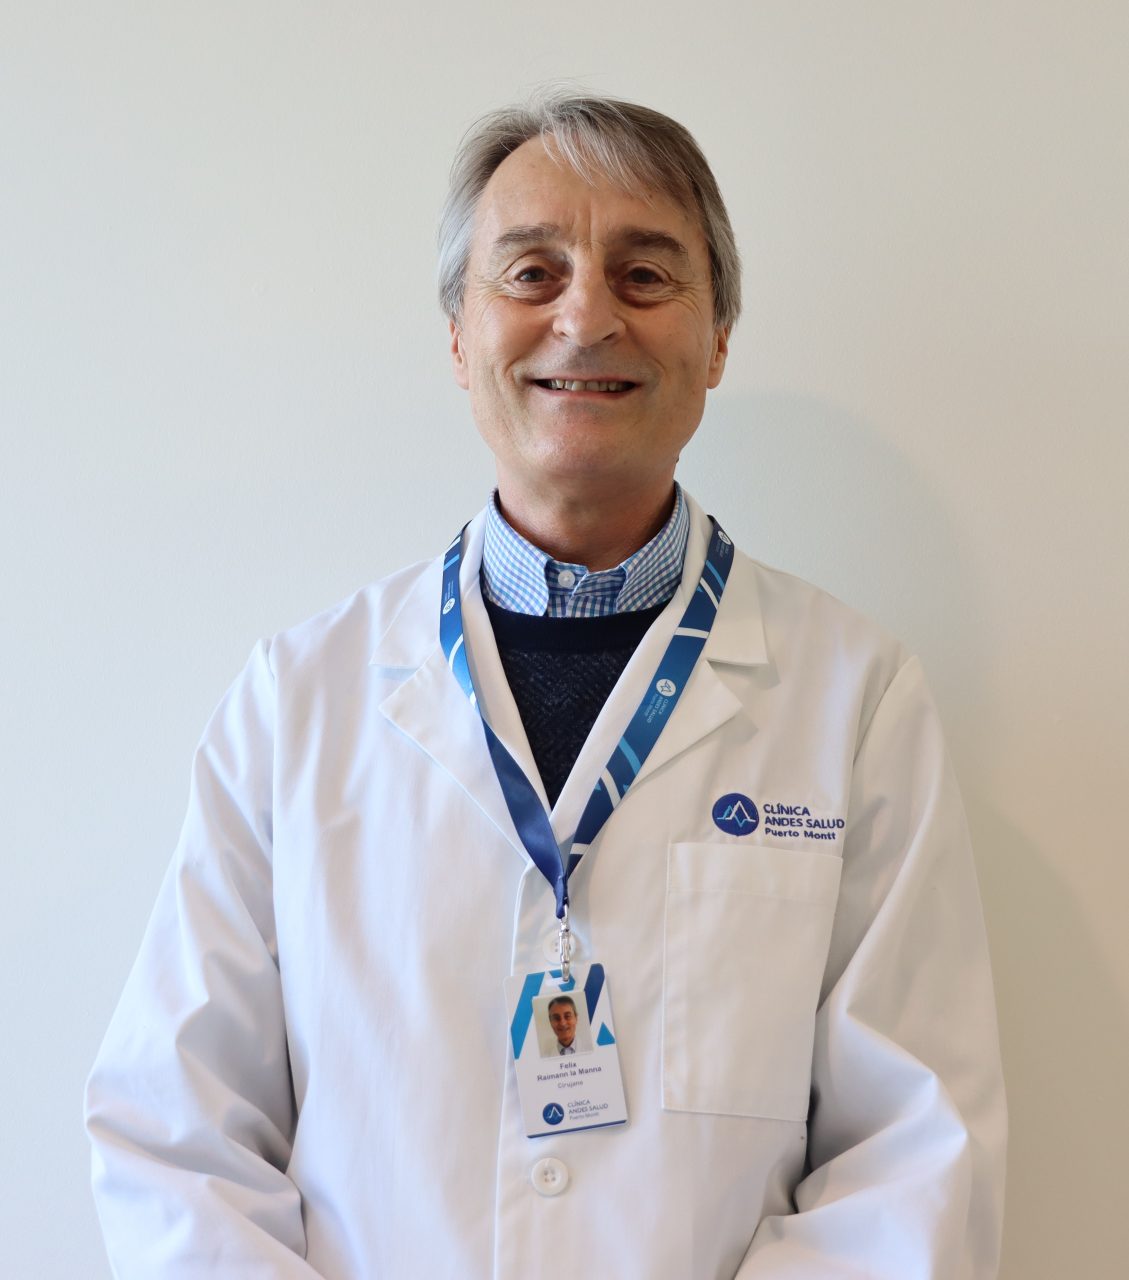 Dr. Felix Raimann La Manna